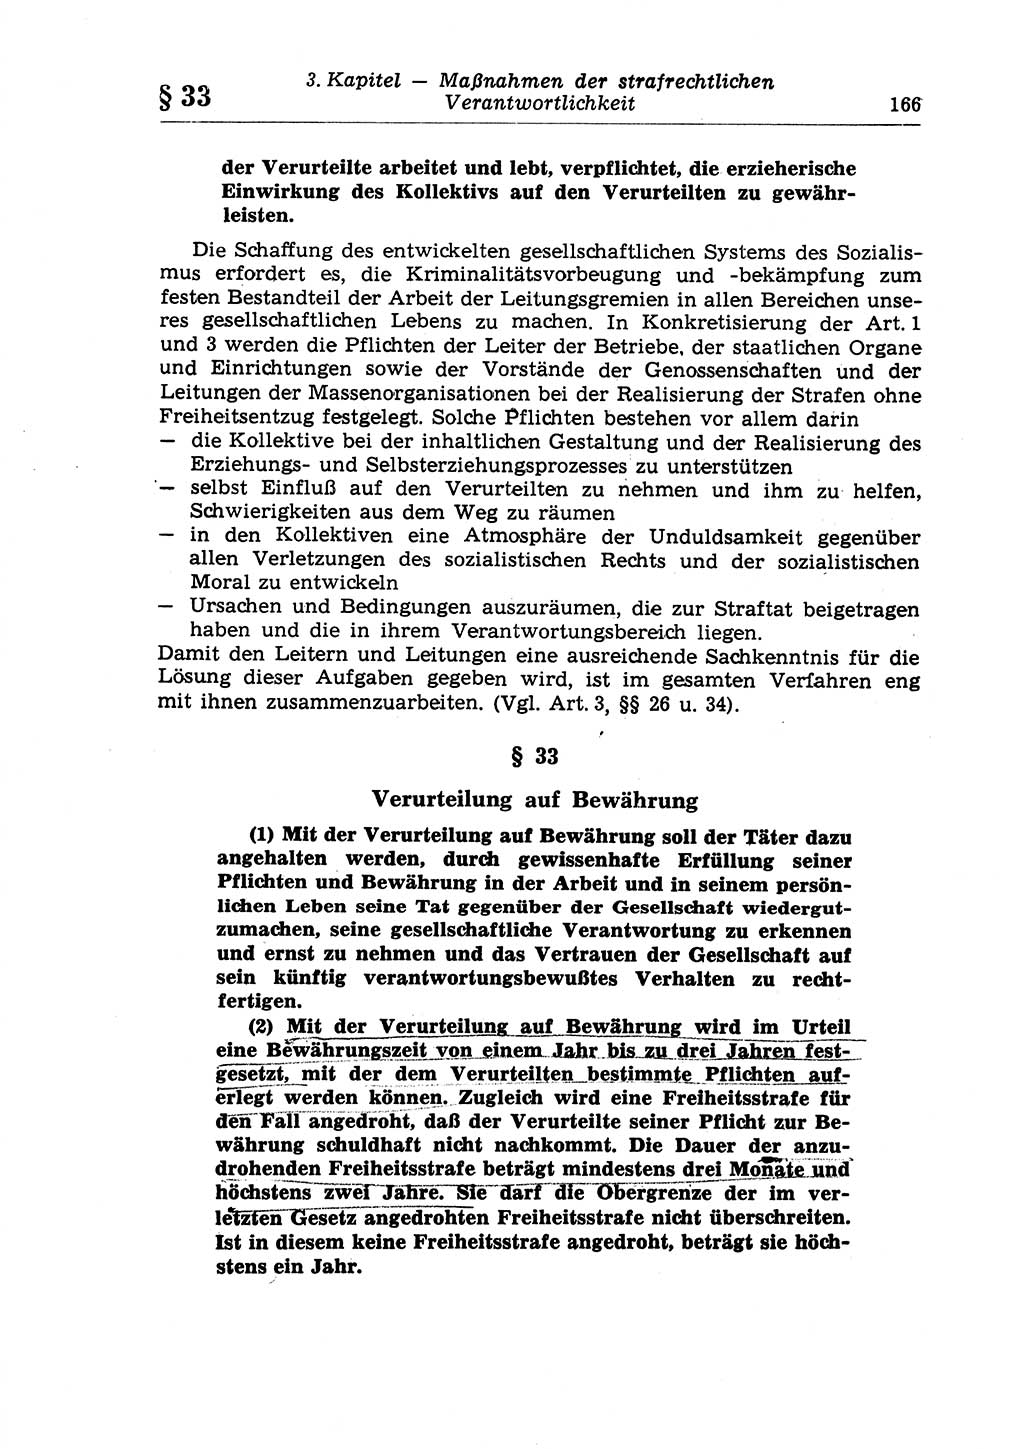 Strafrecht der Deutschen Demokratischen Republik (DDR), Lehrkommentar zum Strafgesetzbuch (StGB), Allgemeiner Teil 1970, Seite 166 (Strafr. DDR Lehrkomm. StGB AT 1970, S. 166)